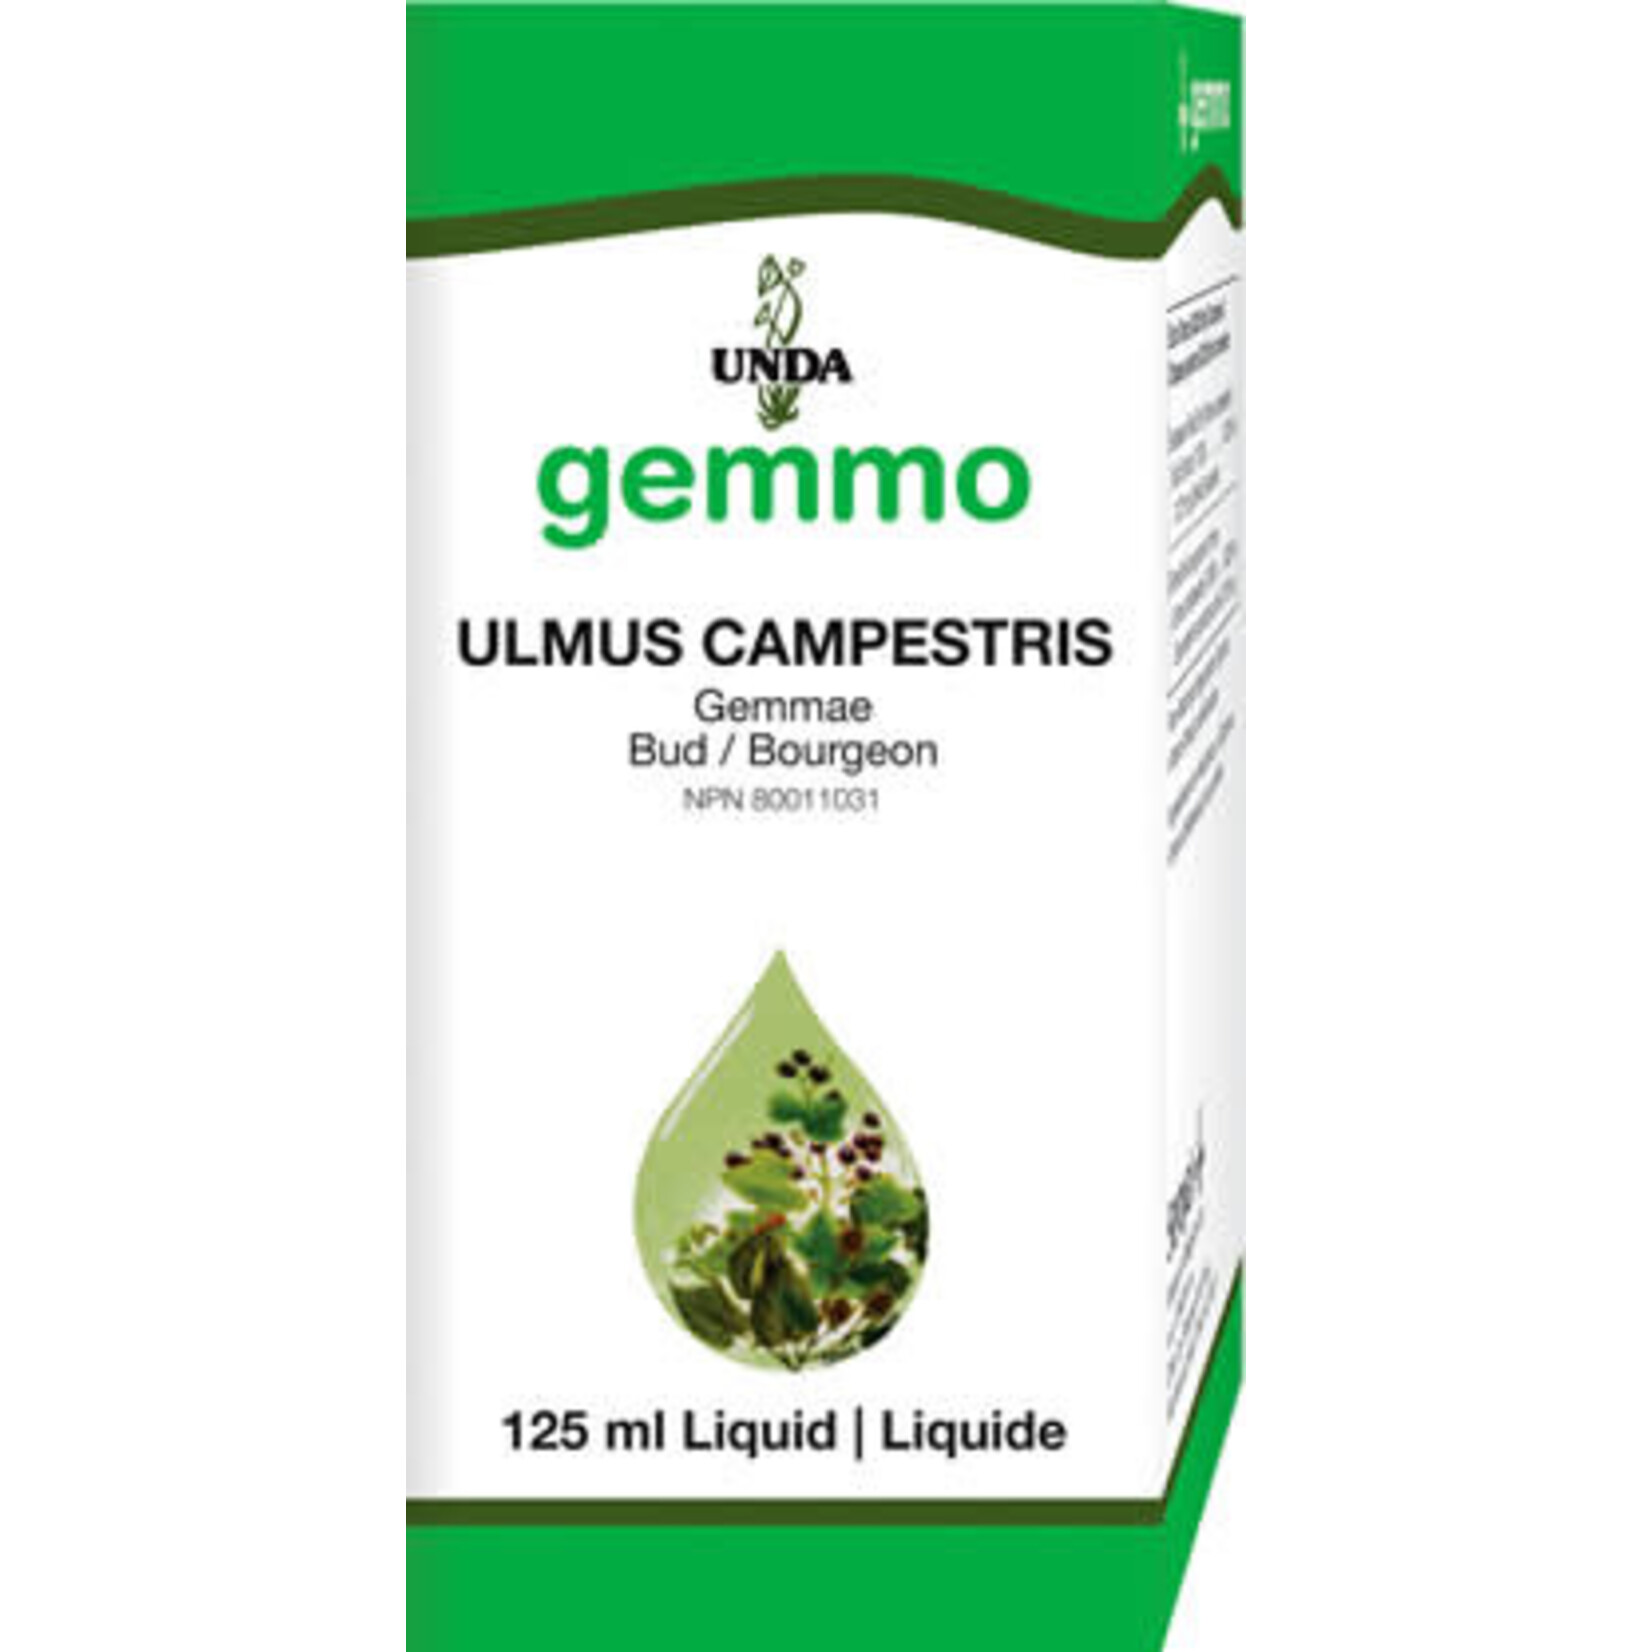 GEMMO GEMMO ULMUS CAMPESTRIS 125ML